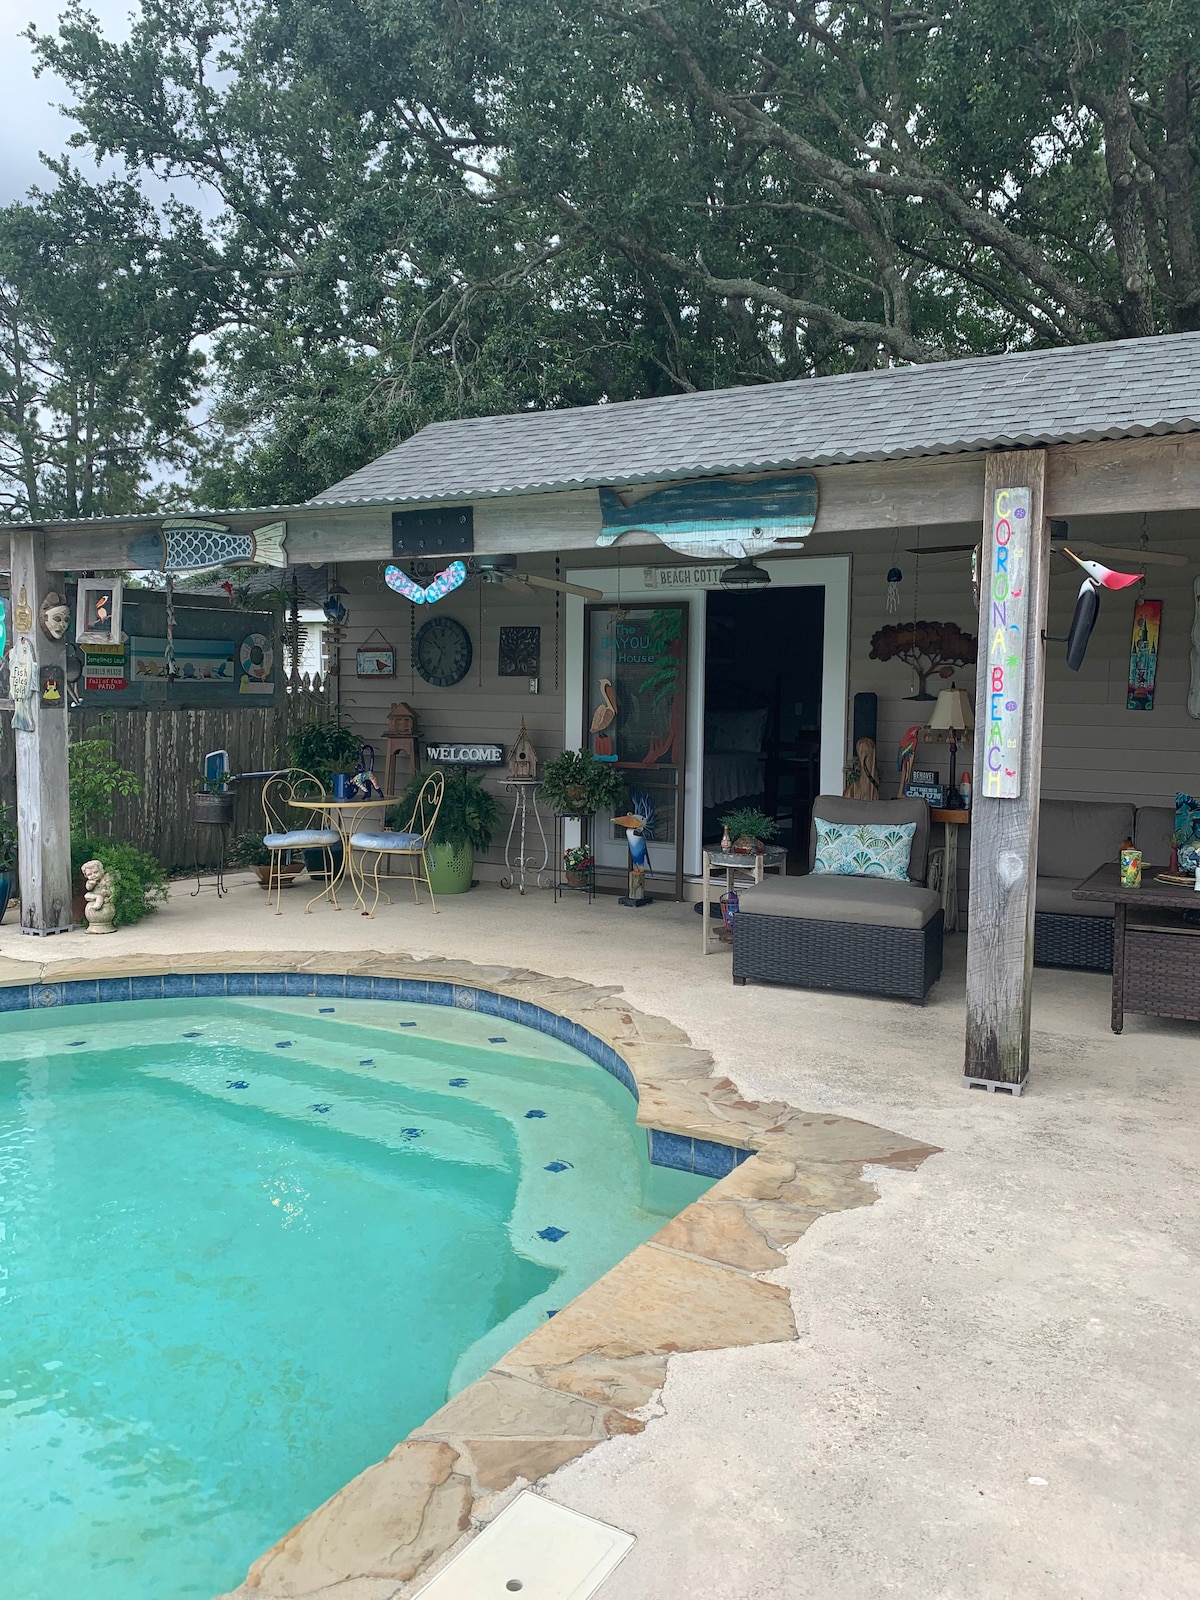 独一无二的休闲场所-河口泳池别墅（ Bayou Pool House ）